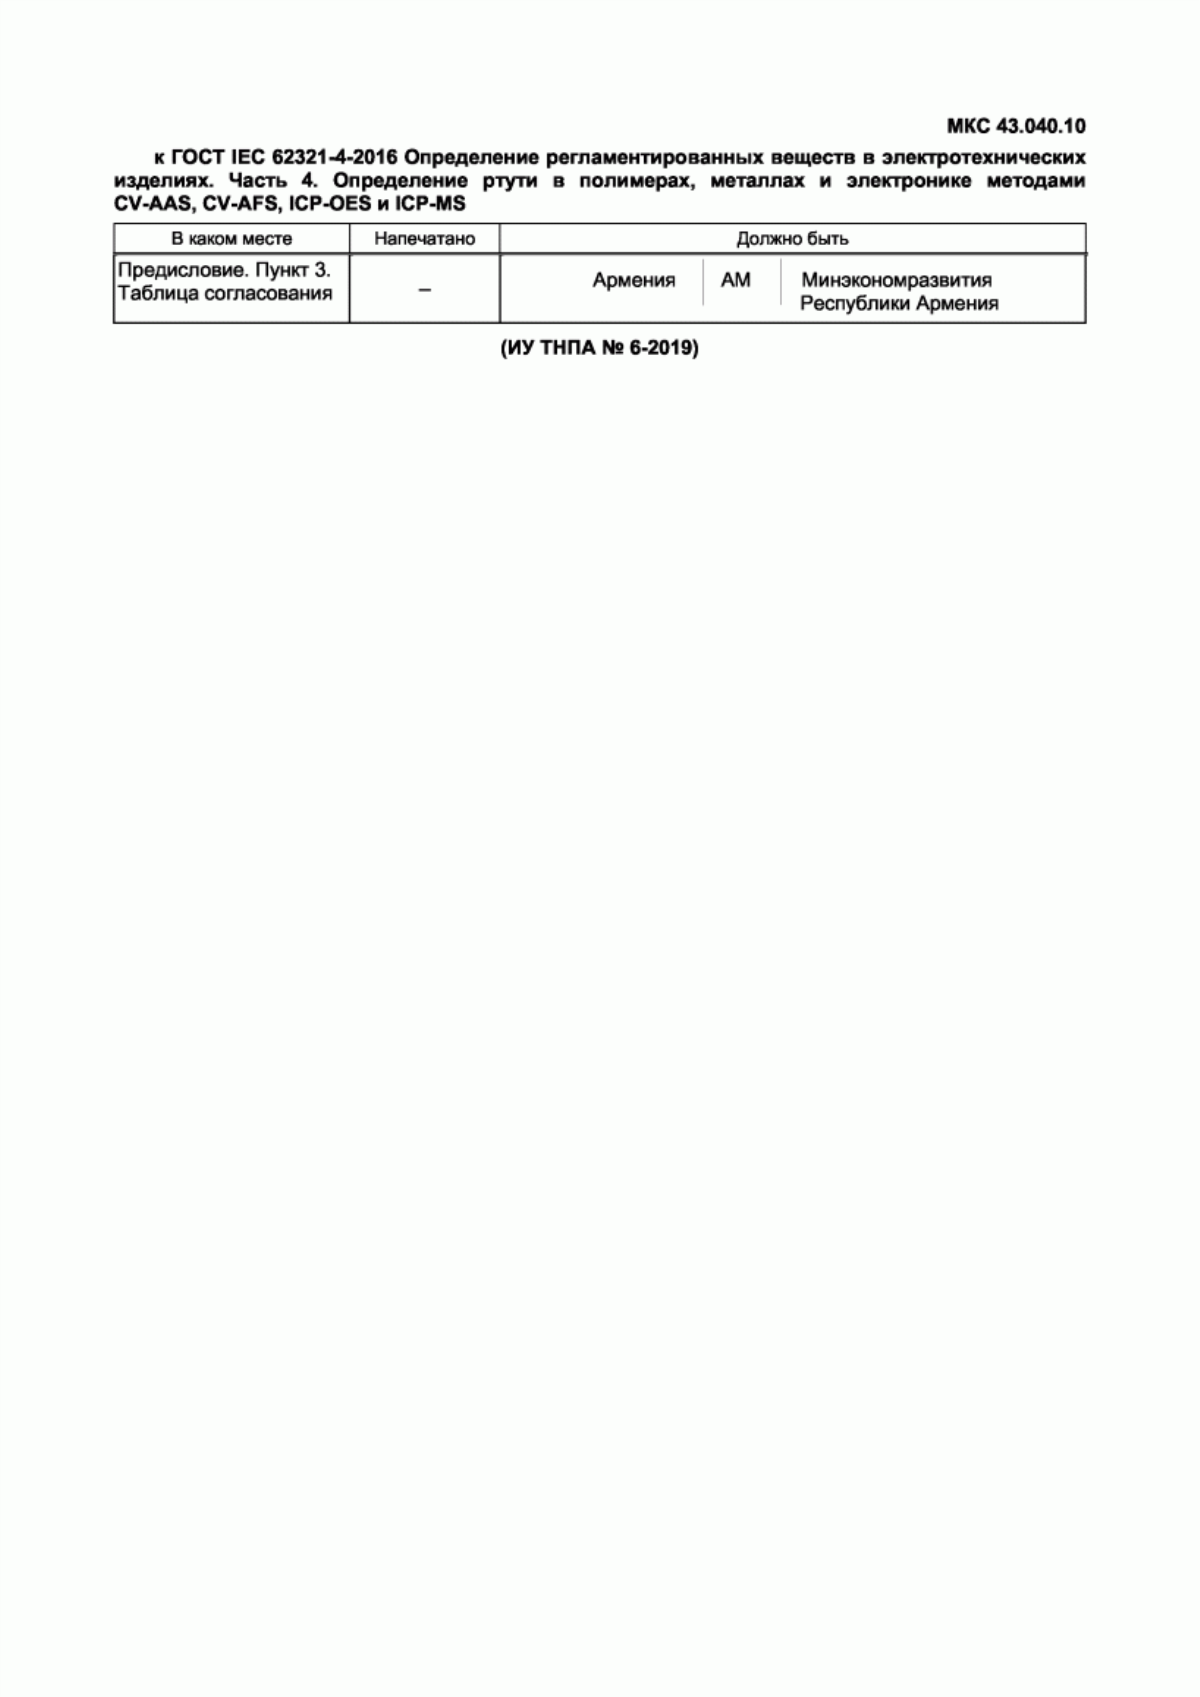 ГОСТ IEC 62321-4-2016 Определение регламентированных веществ в электротехнических изделиях. Часть 4. Определение ртути в полимерах, металлах и электронике методами CV-AAS, CV-AFS, ICP-OES и ICP-MS